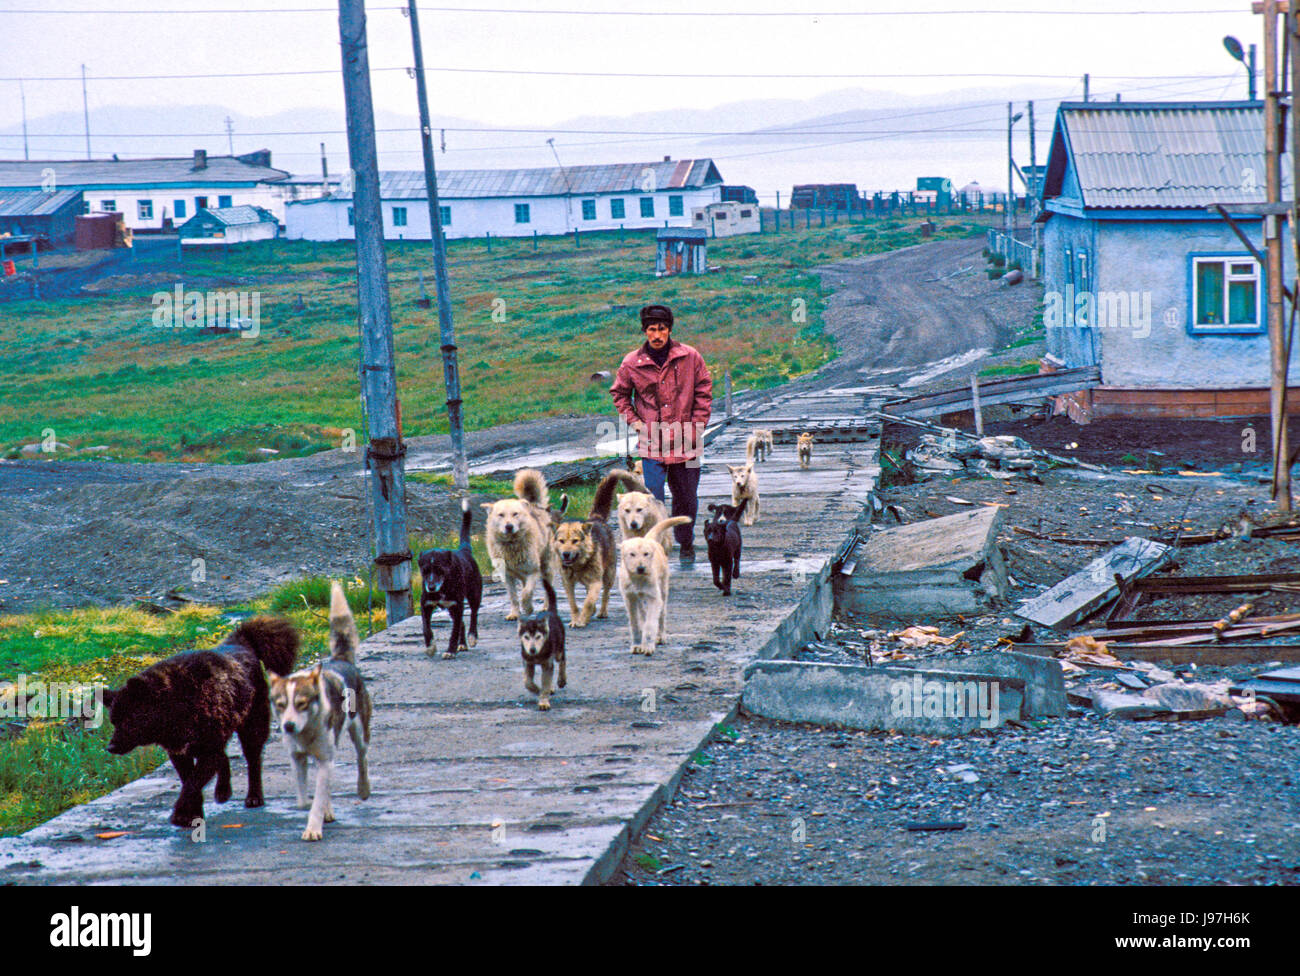 Traîneau à chiens d'aller marcher au village Yupik d'Uelen, Tchoukotka, La Russie extrême-orient. Banque D'Images